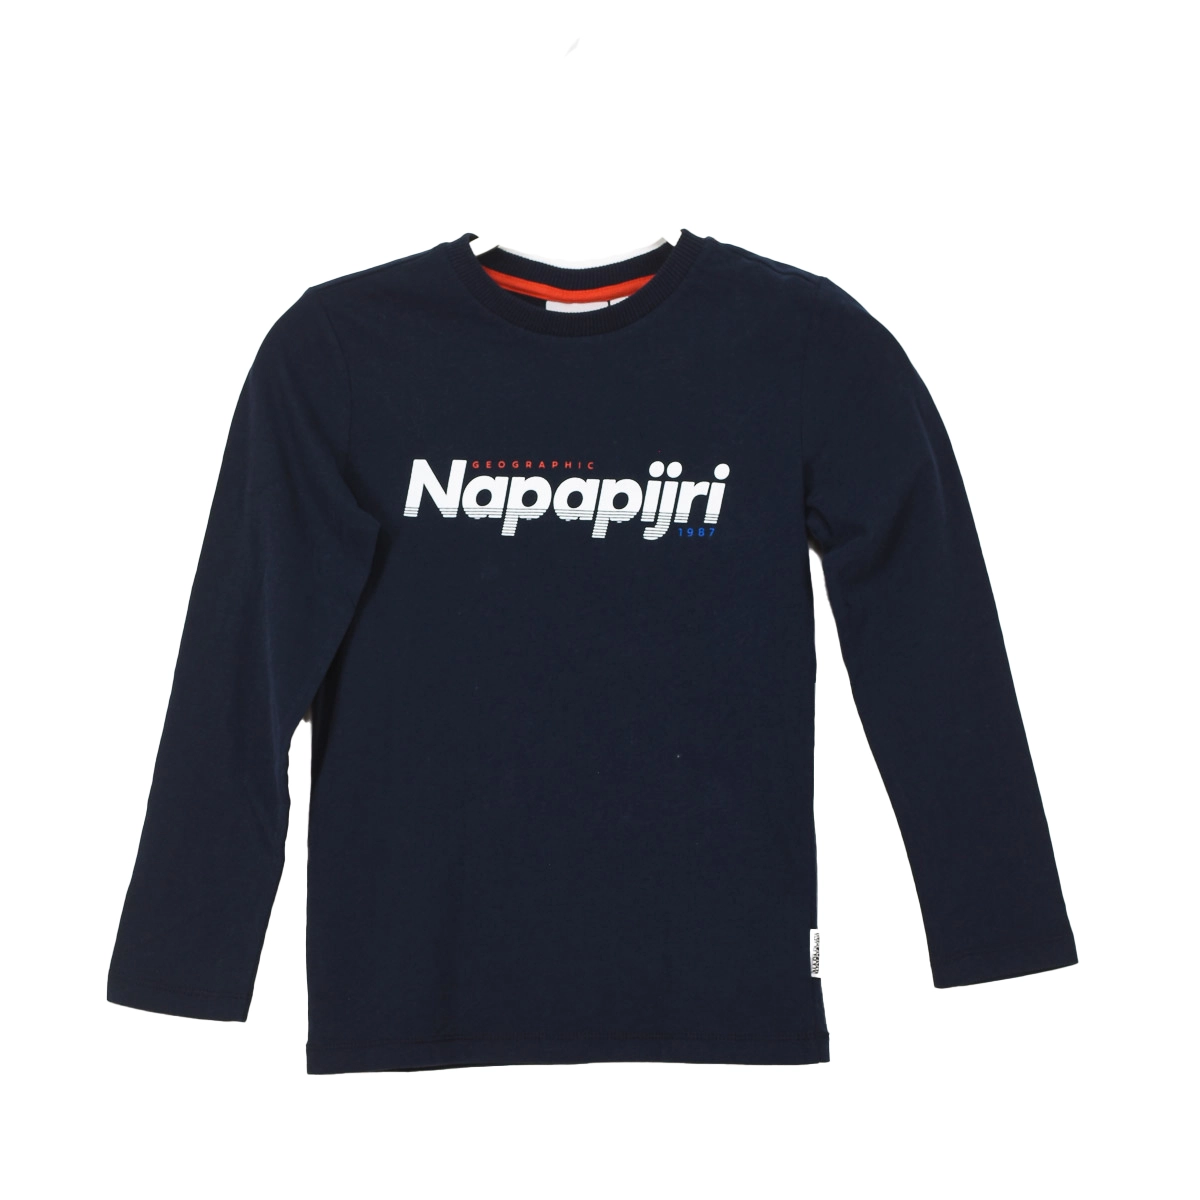 Camiseta de manga larga y cuello redondo Napapijri GA4EQF niño Talla: 8 AÑOS Color: Azul GA4EQF-176.8 AÑOS